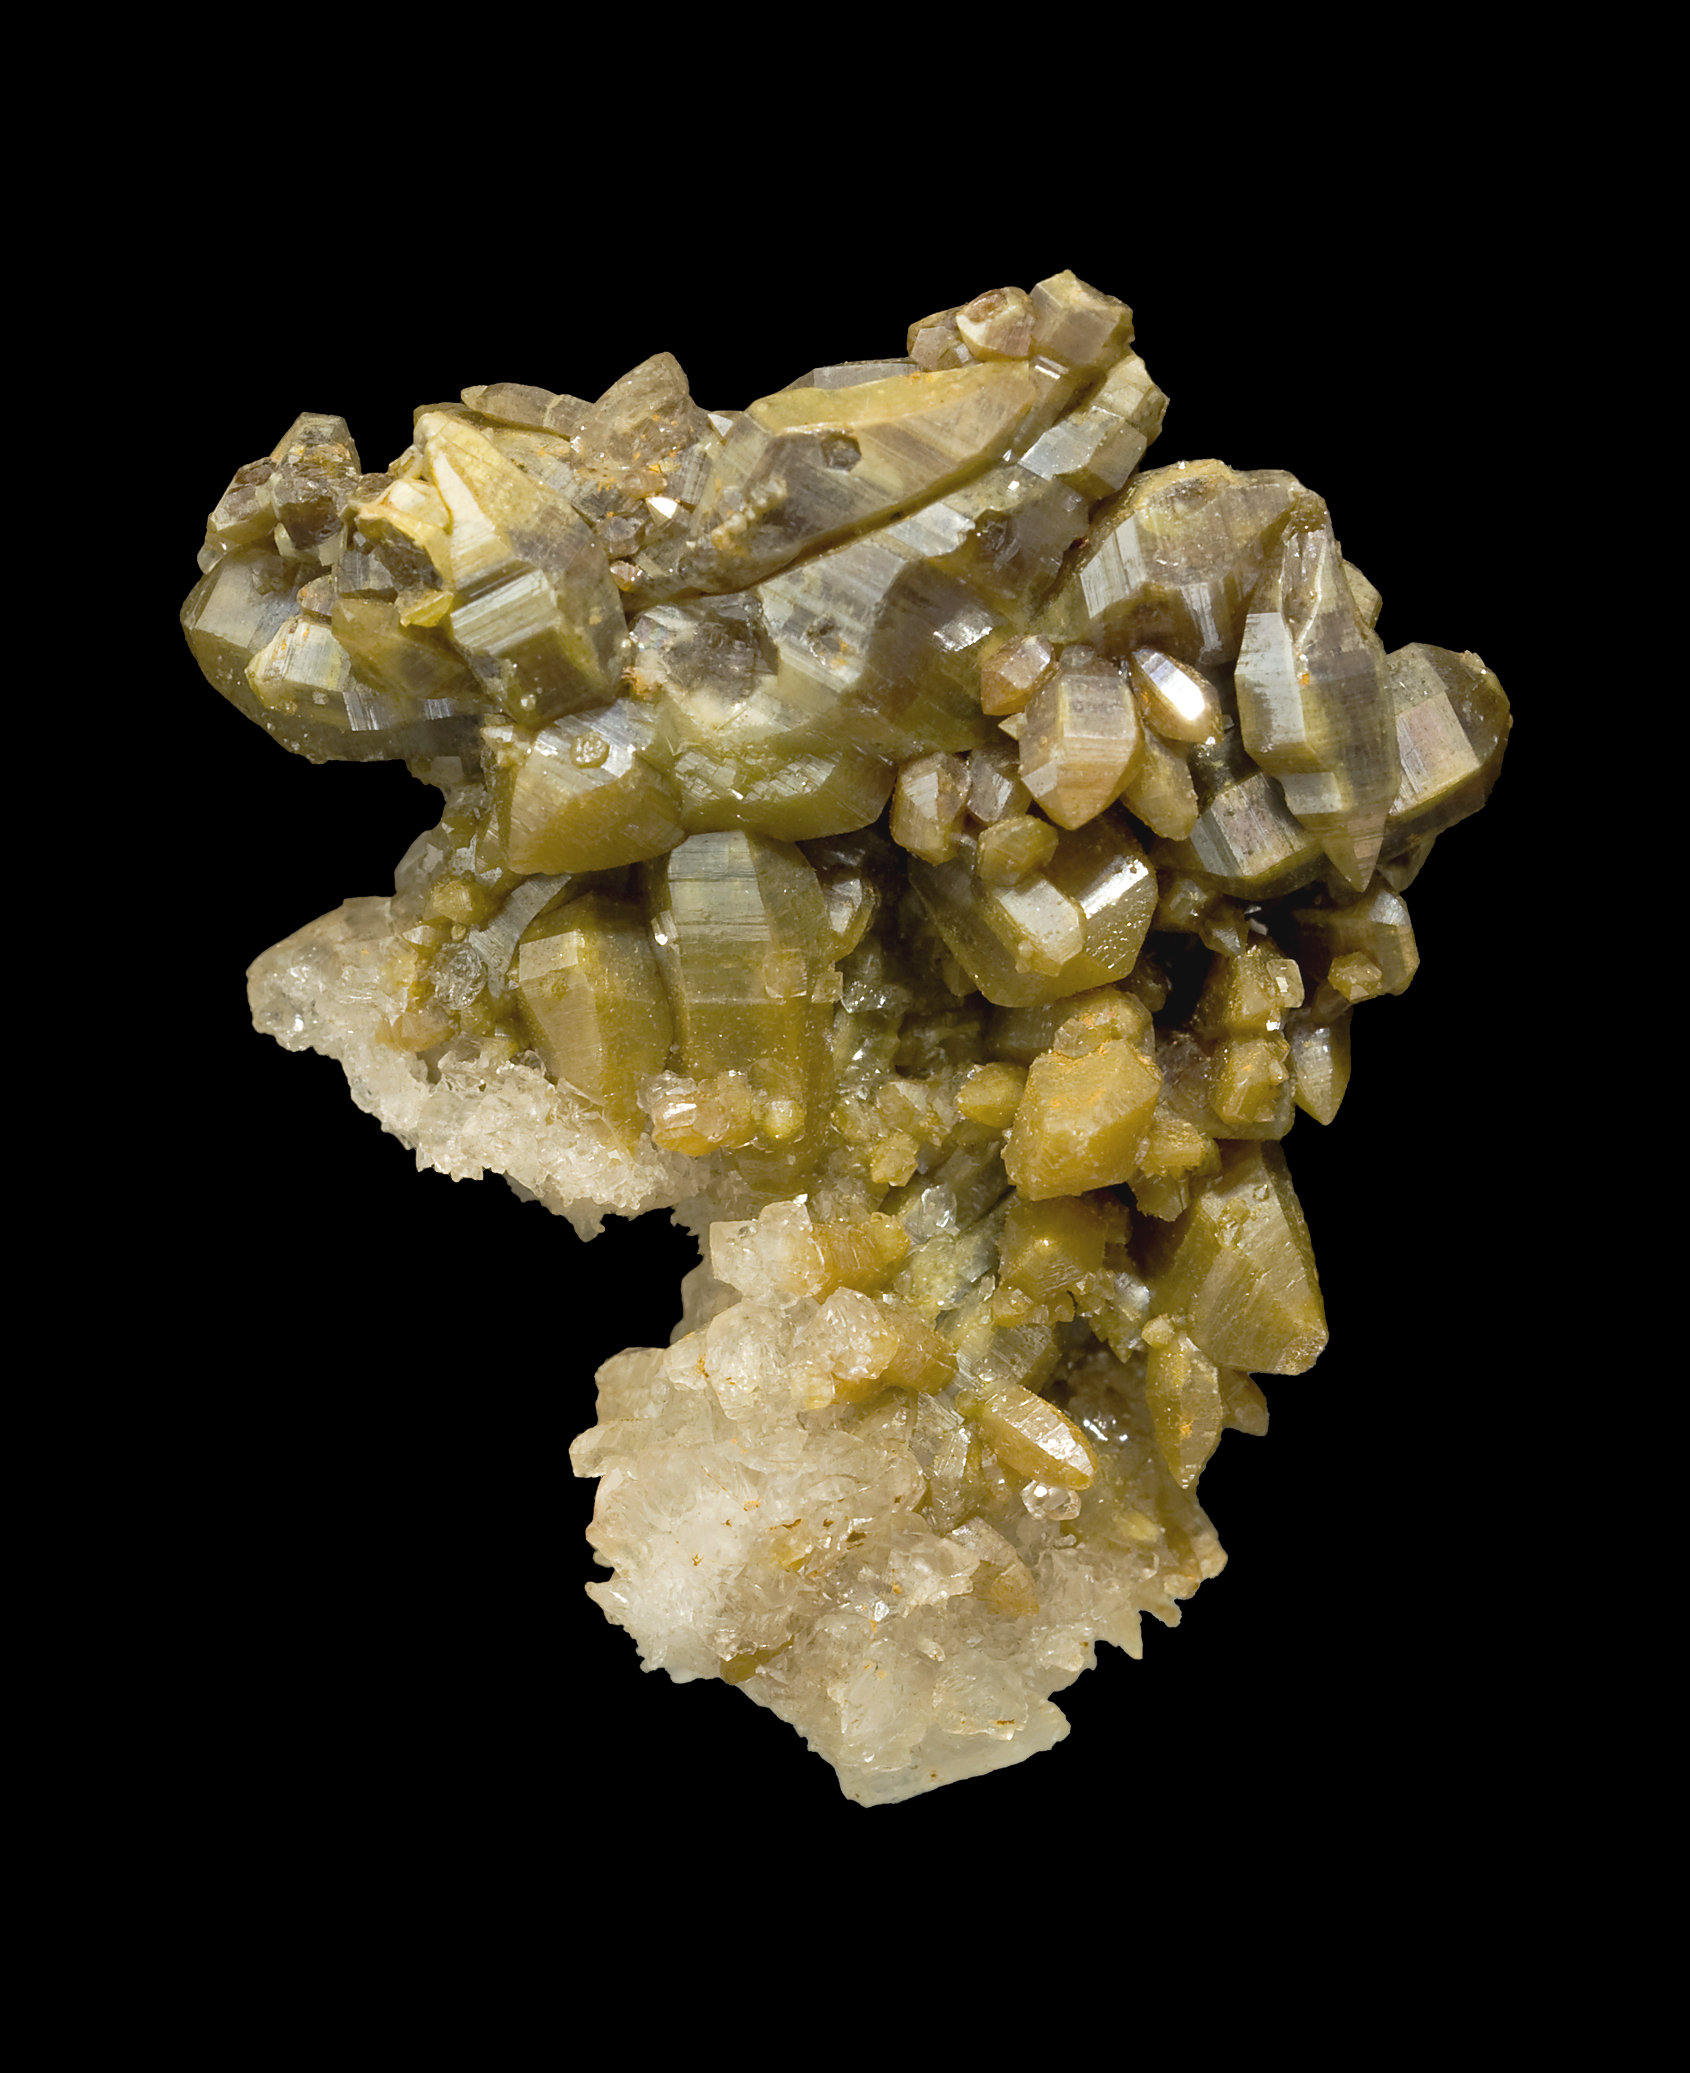 specimens/s_imagesCM/Vanadinite-8TY16V4.jpg